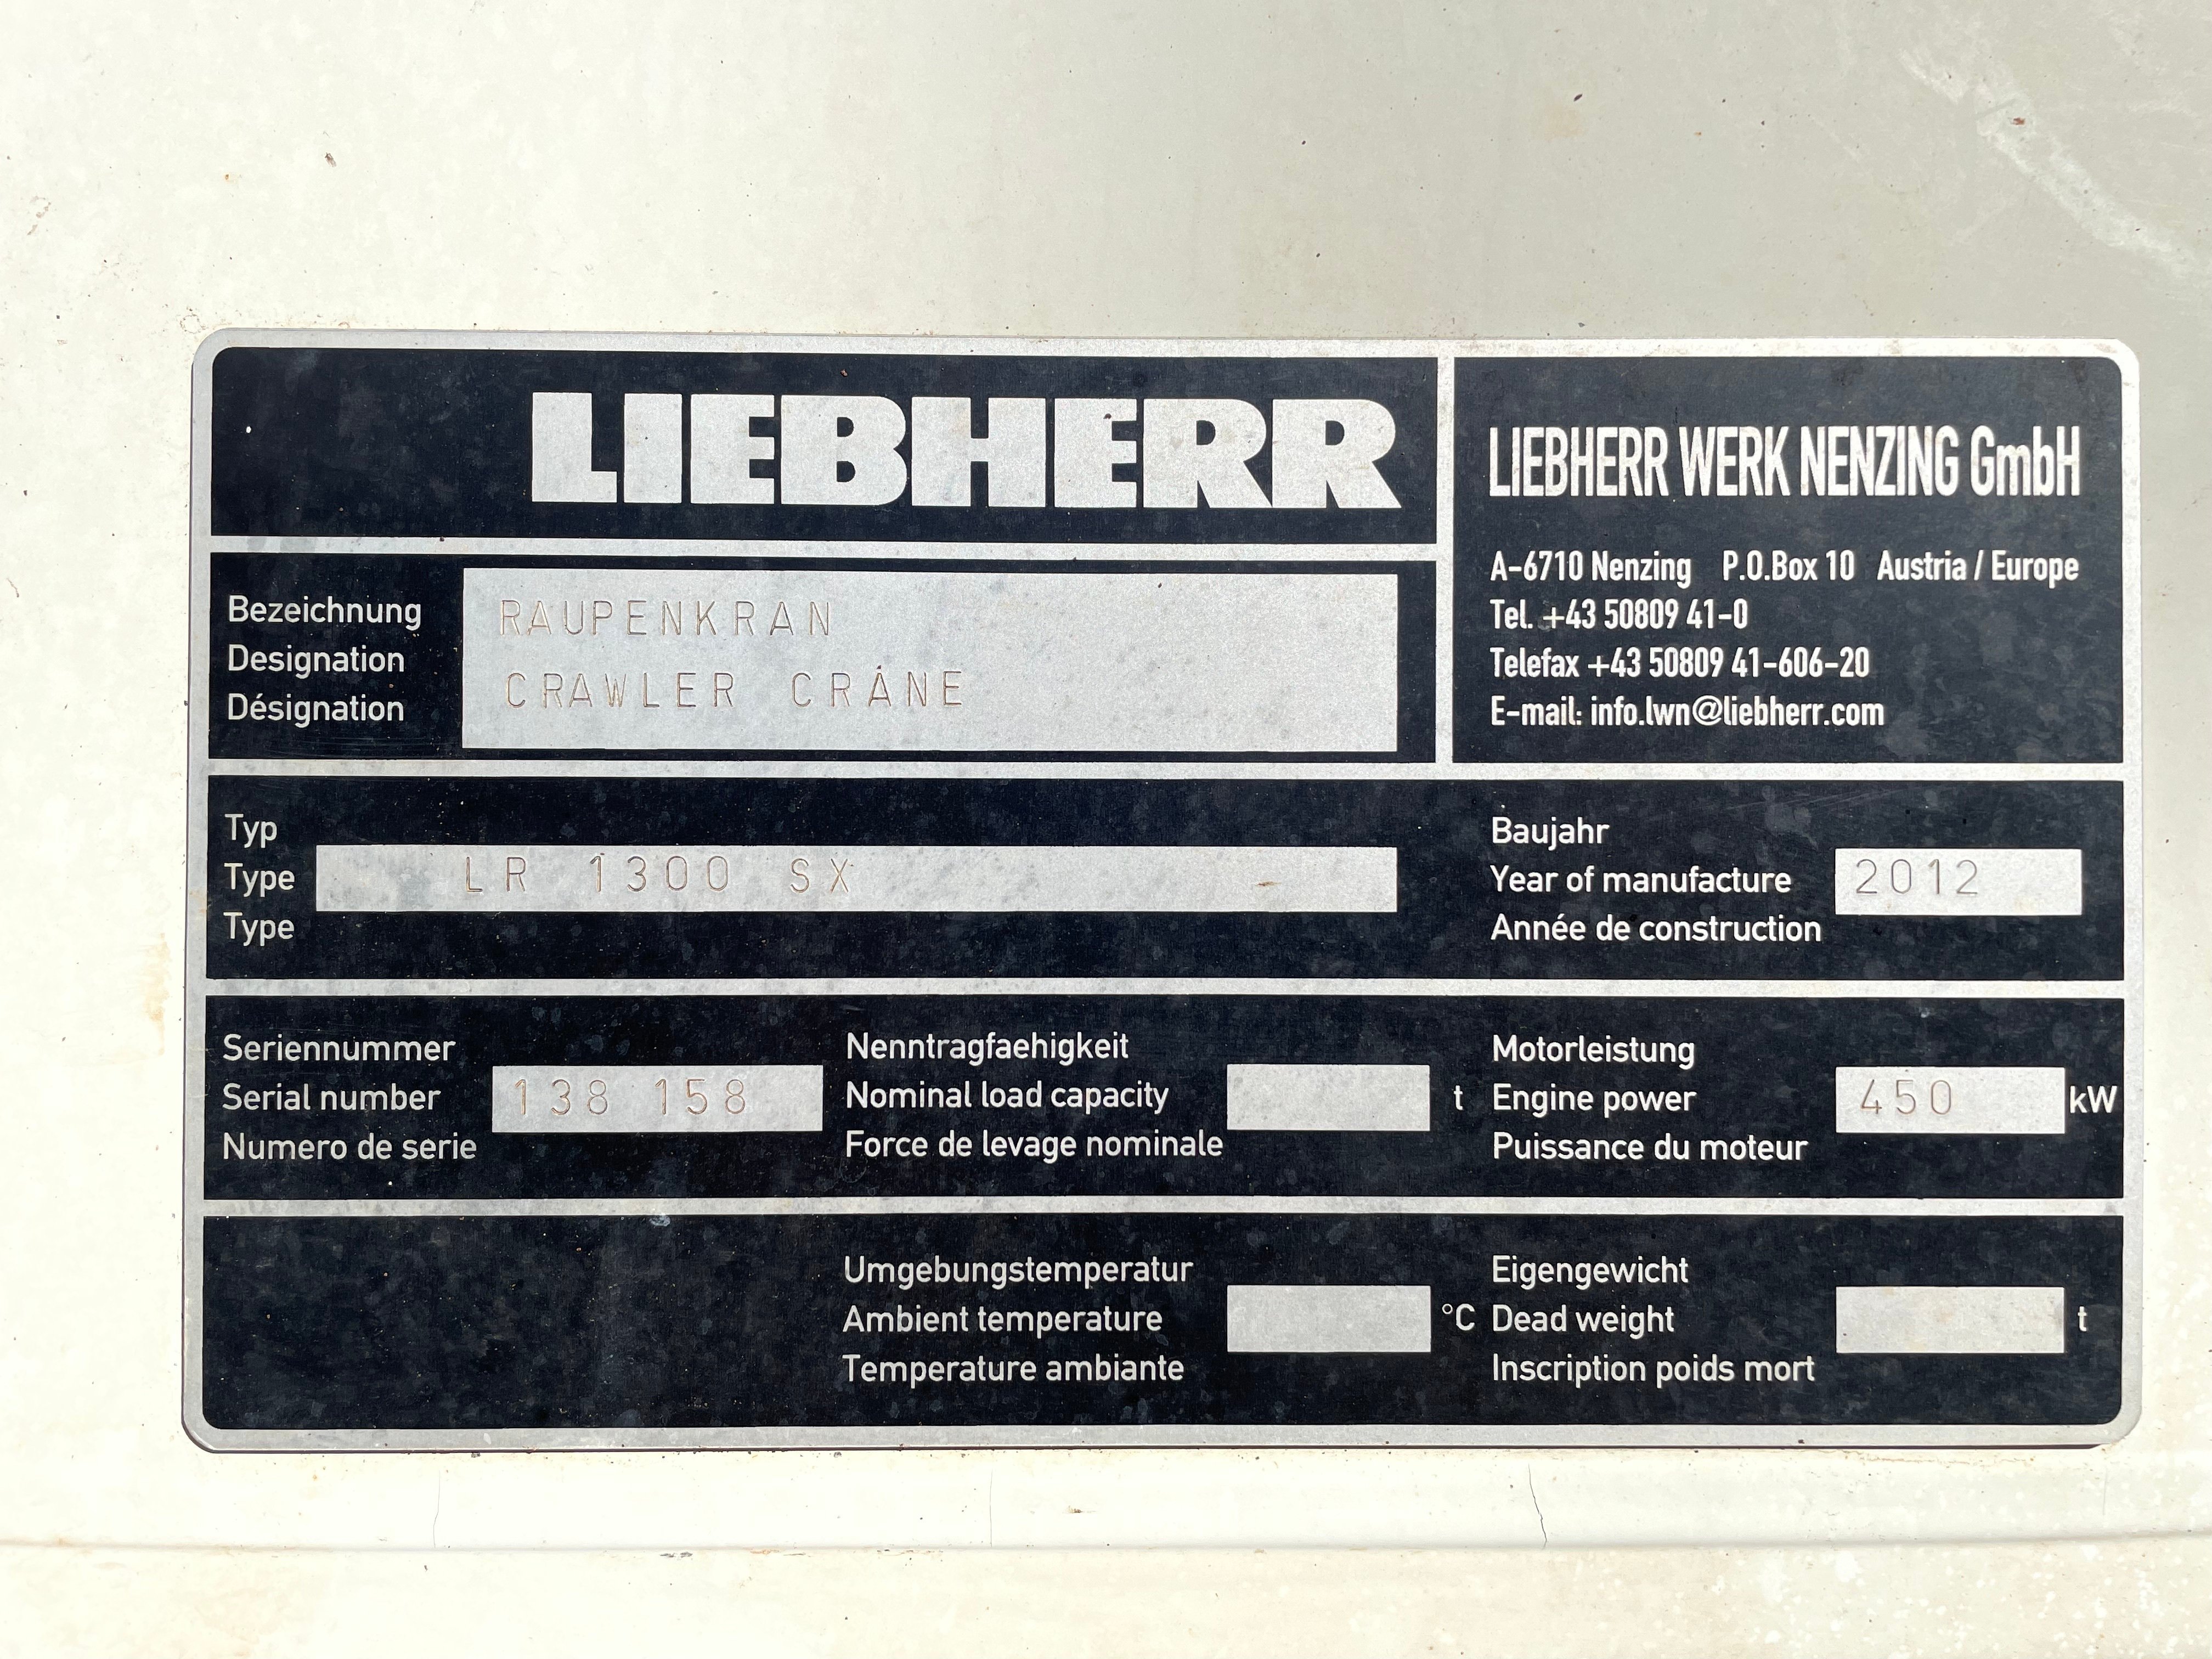 Liebherr LR 1300 SX